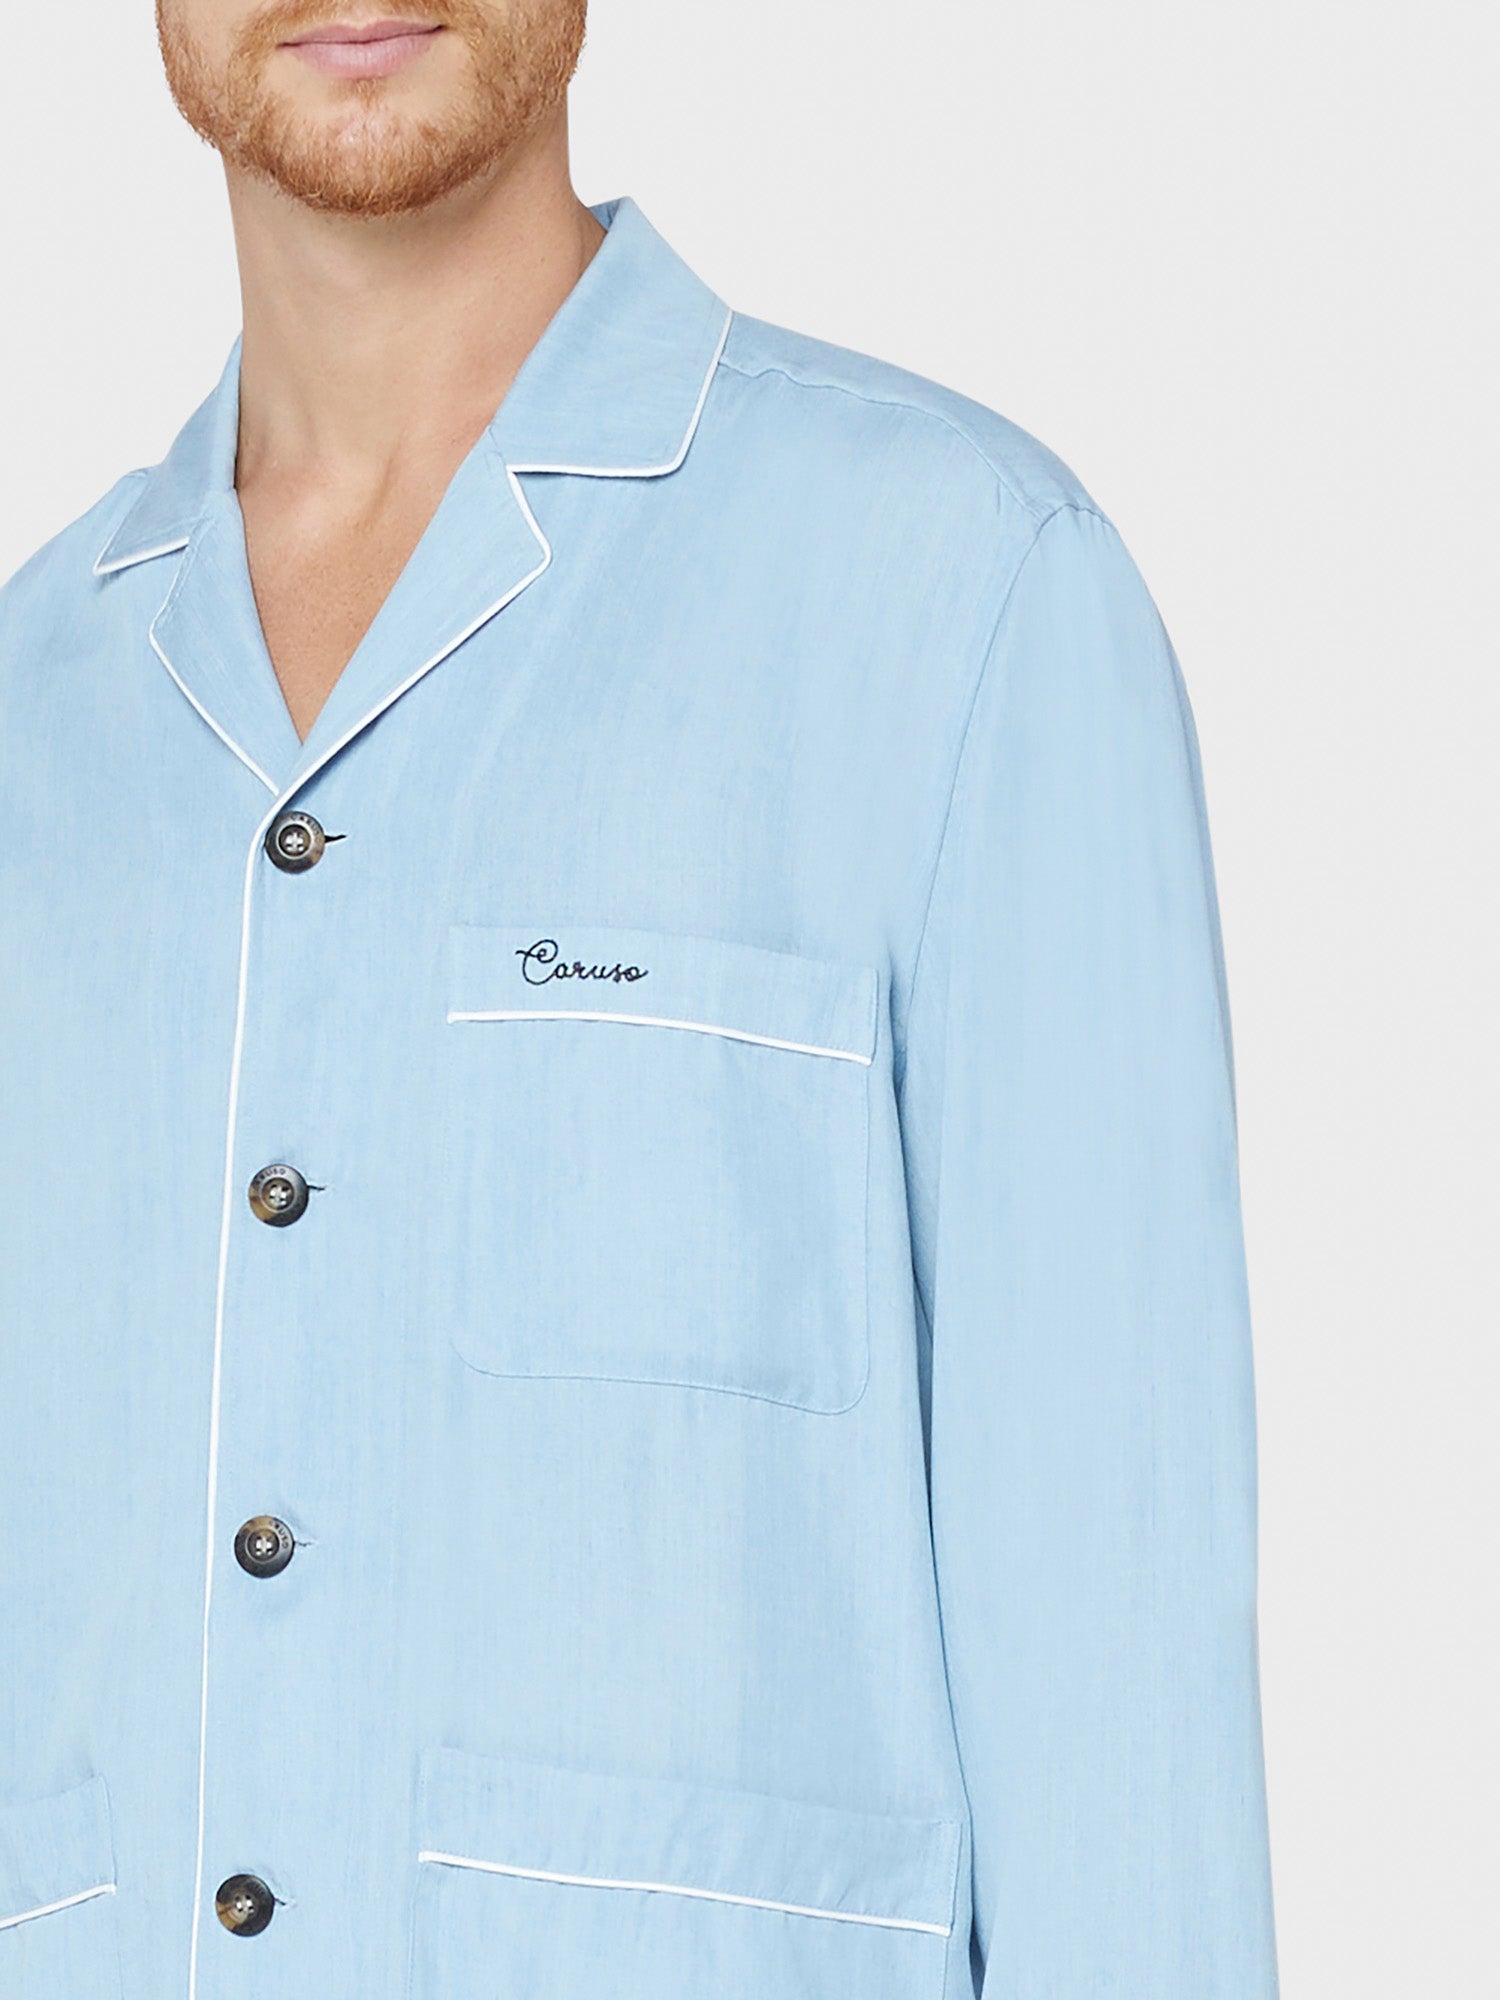 Caruso Menswear Abbigliamento Uomo Home suit sleepwear pigiama in tencel azzurro jeans dettaglio